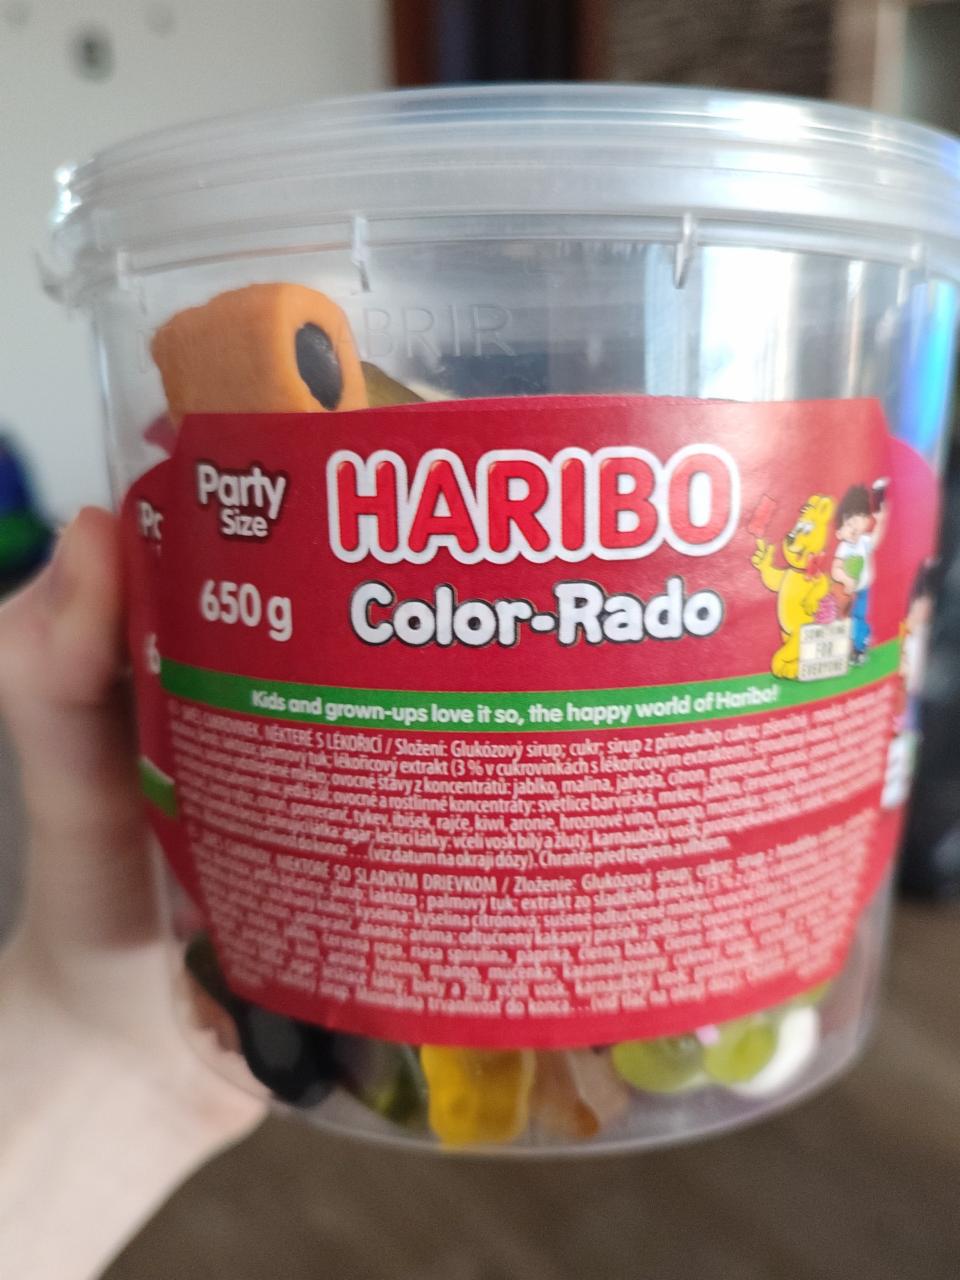 Fotografie - Color-Rado party size Haribo